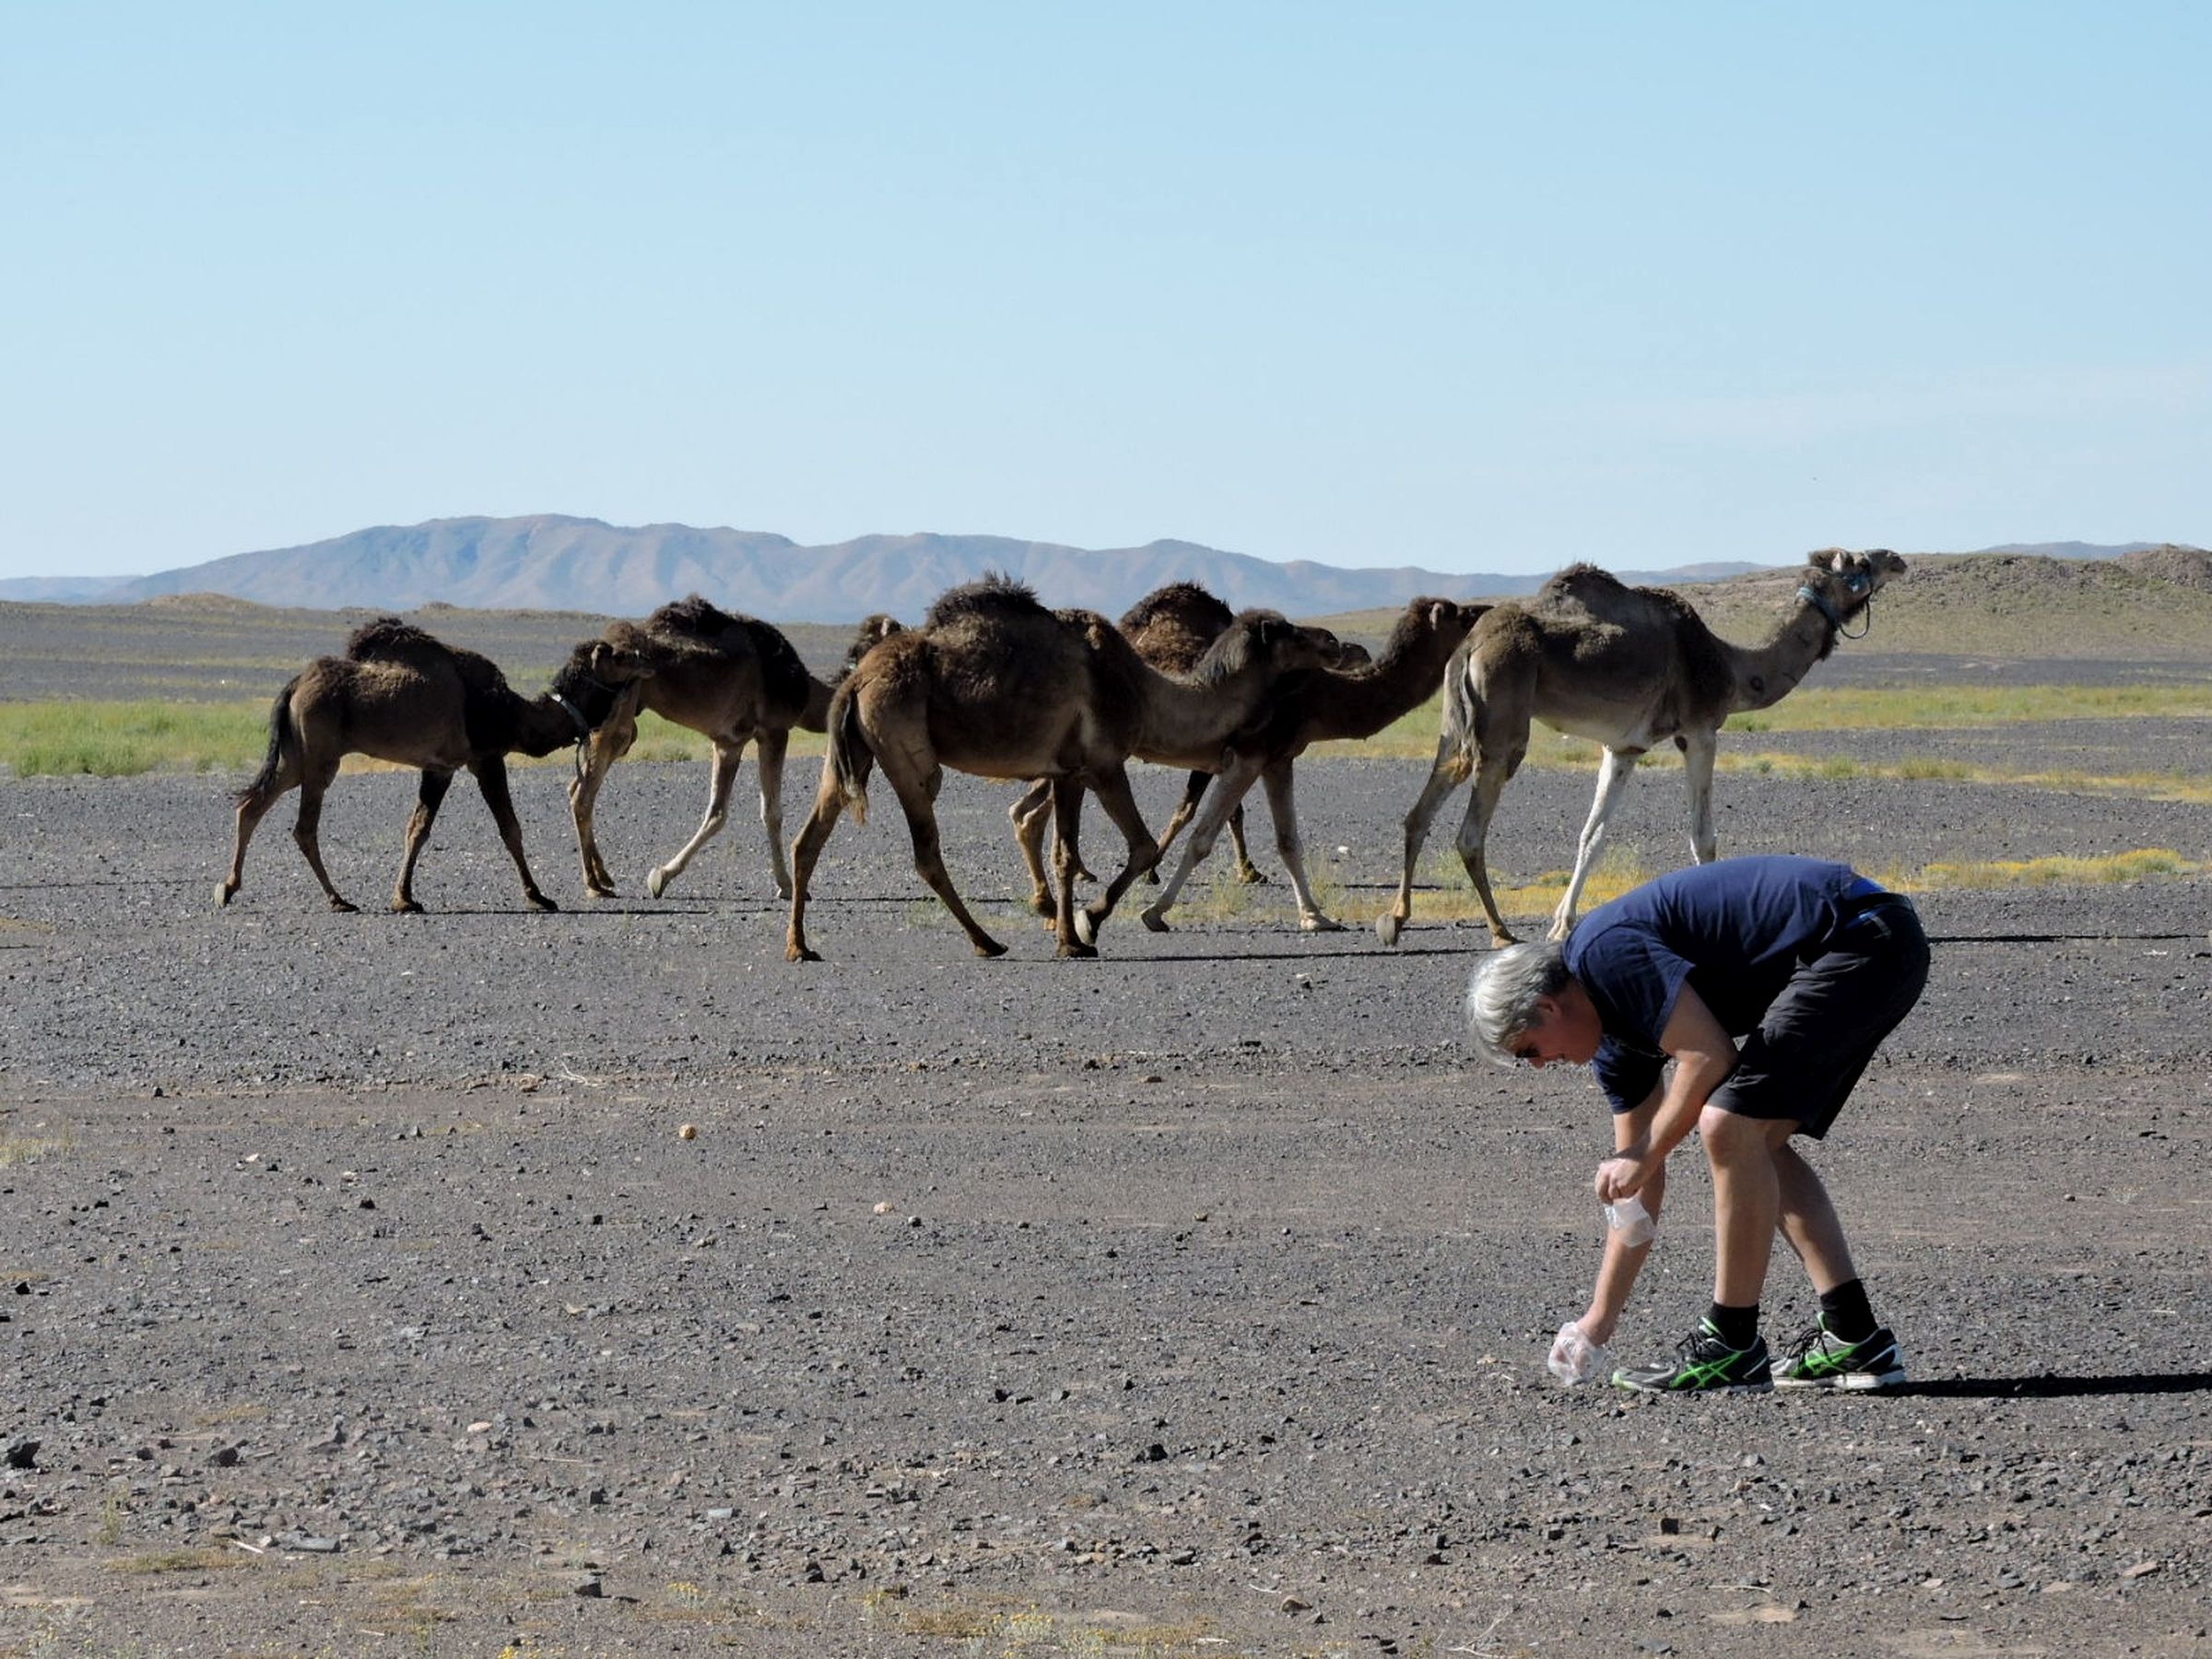 Jon Larsen searching for micrometeorites in the Sahara Desert.